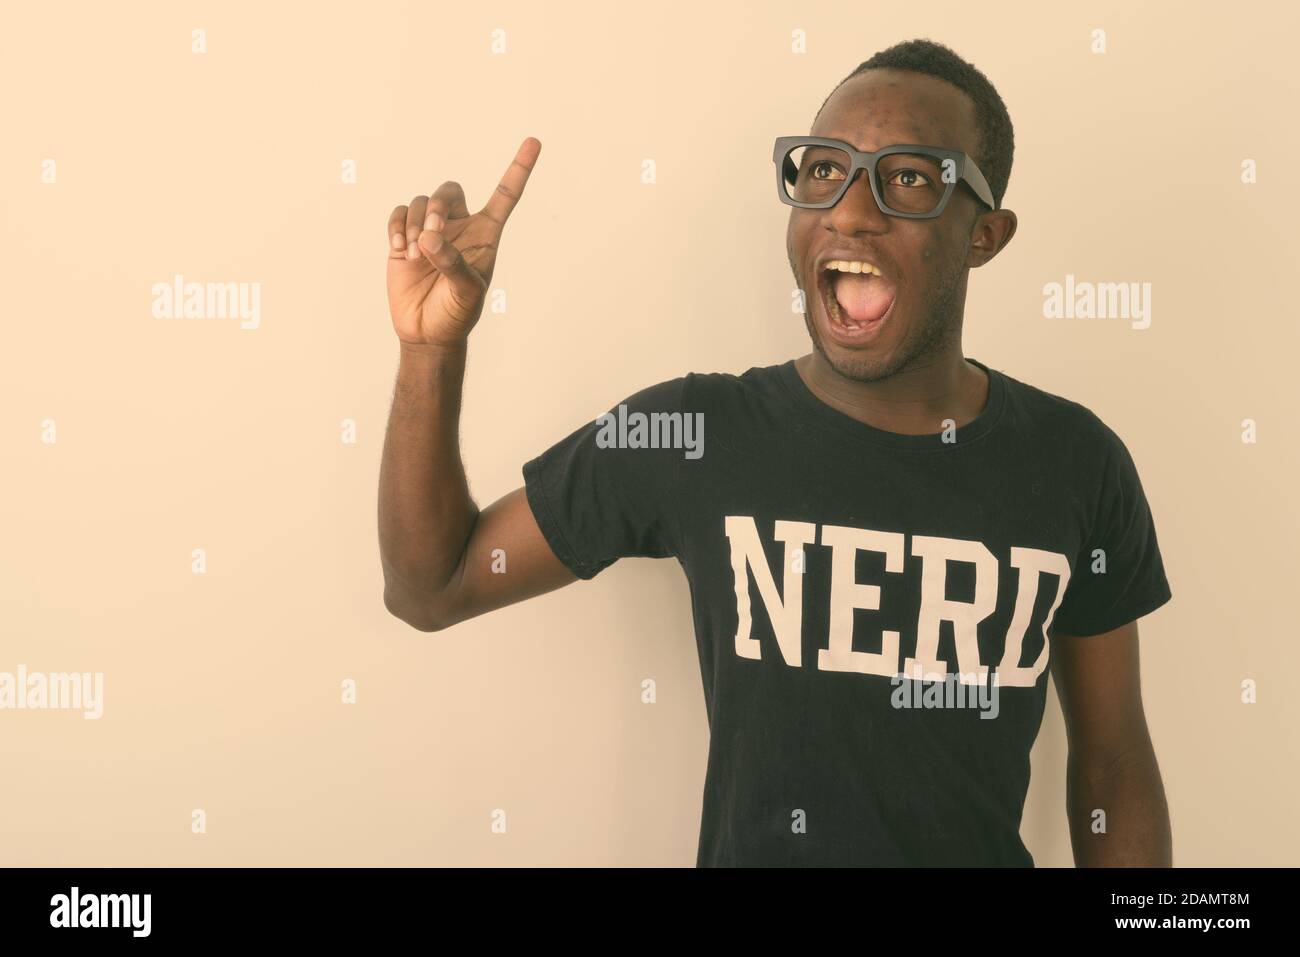 Foto de estudio de joven feliz negro africano geek hombre con Gran idea sonriendo y apuntando con el dedo hacia arriba mientras llevas Nerd camisa contra fondo blanco Foto de stock